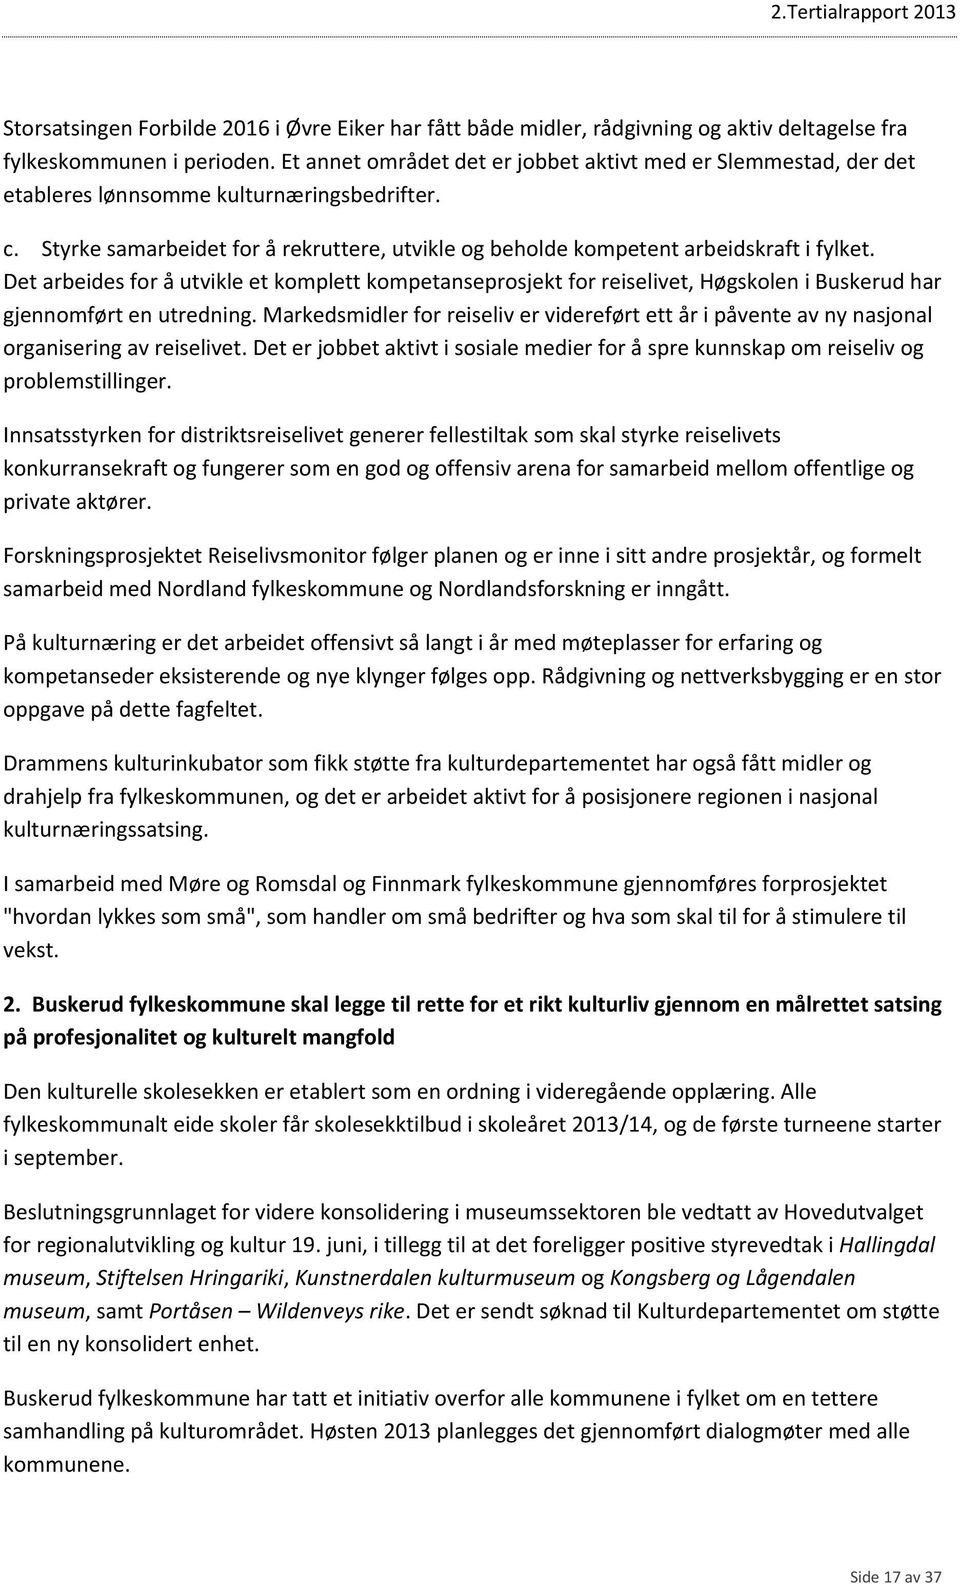 Det arbeides for å utvikle et komplett kompetanseprosjekt for reiselivet, Høgskolen i Buskerud har gjennomført en utredning.